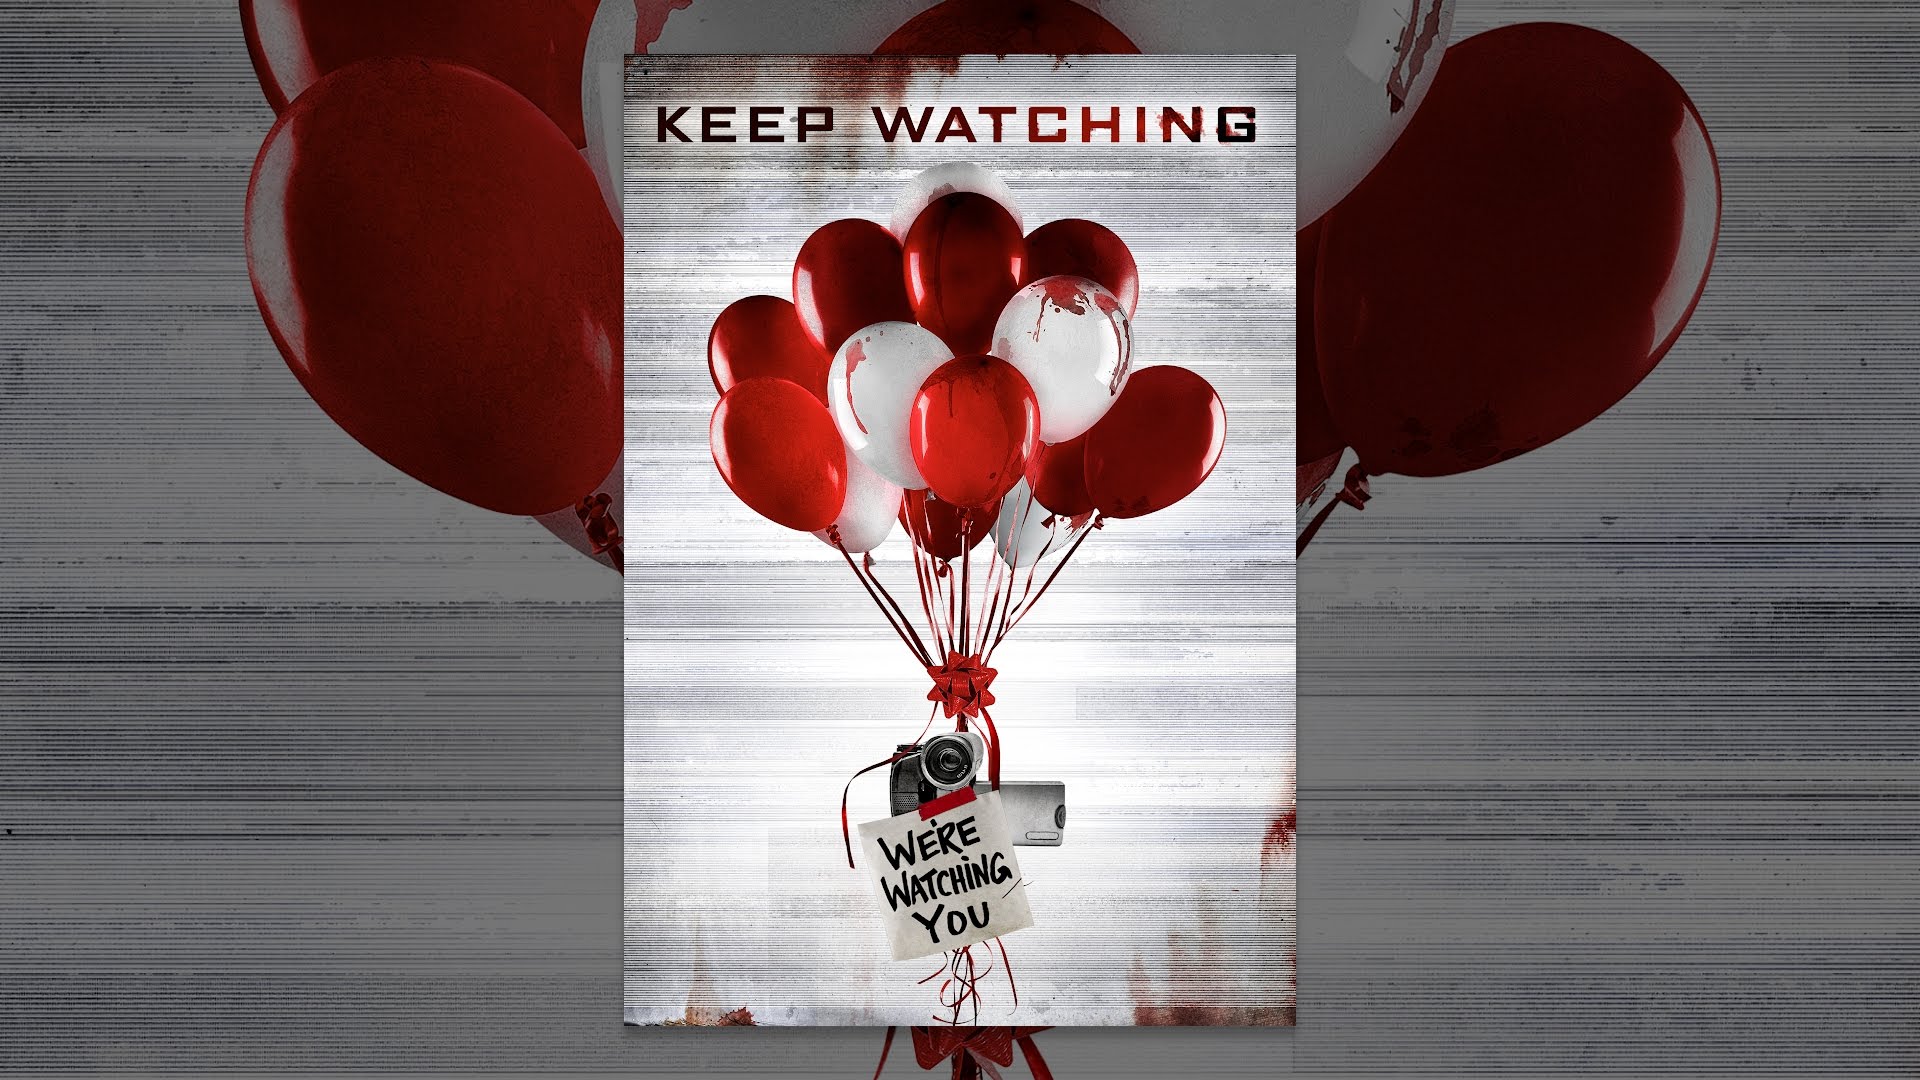 Keep watching. Keep watching you. Keep watch me